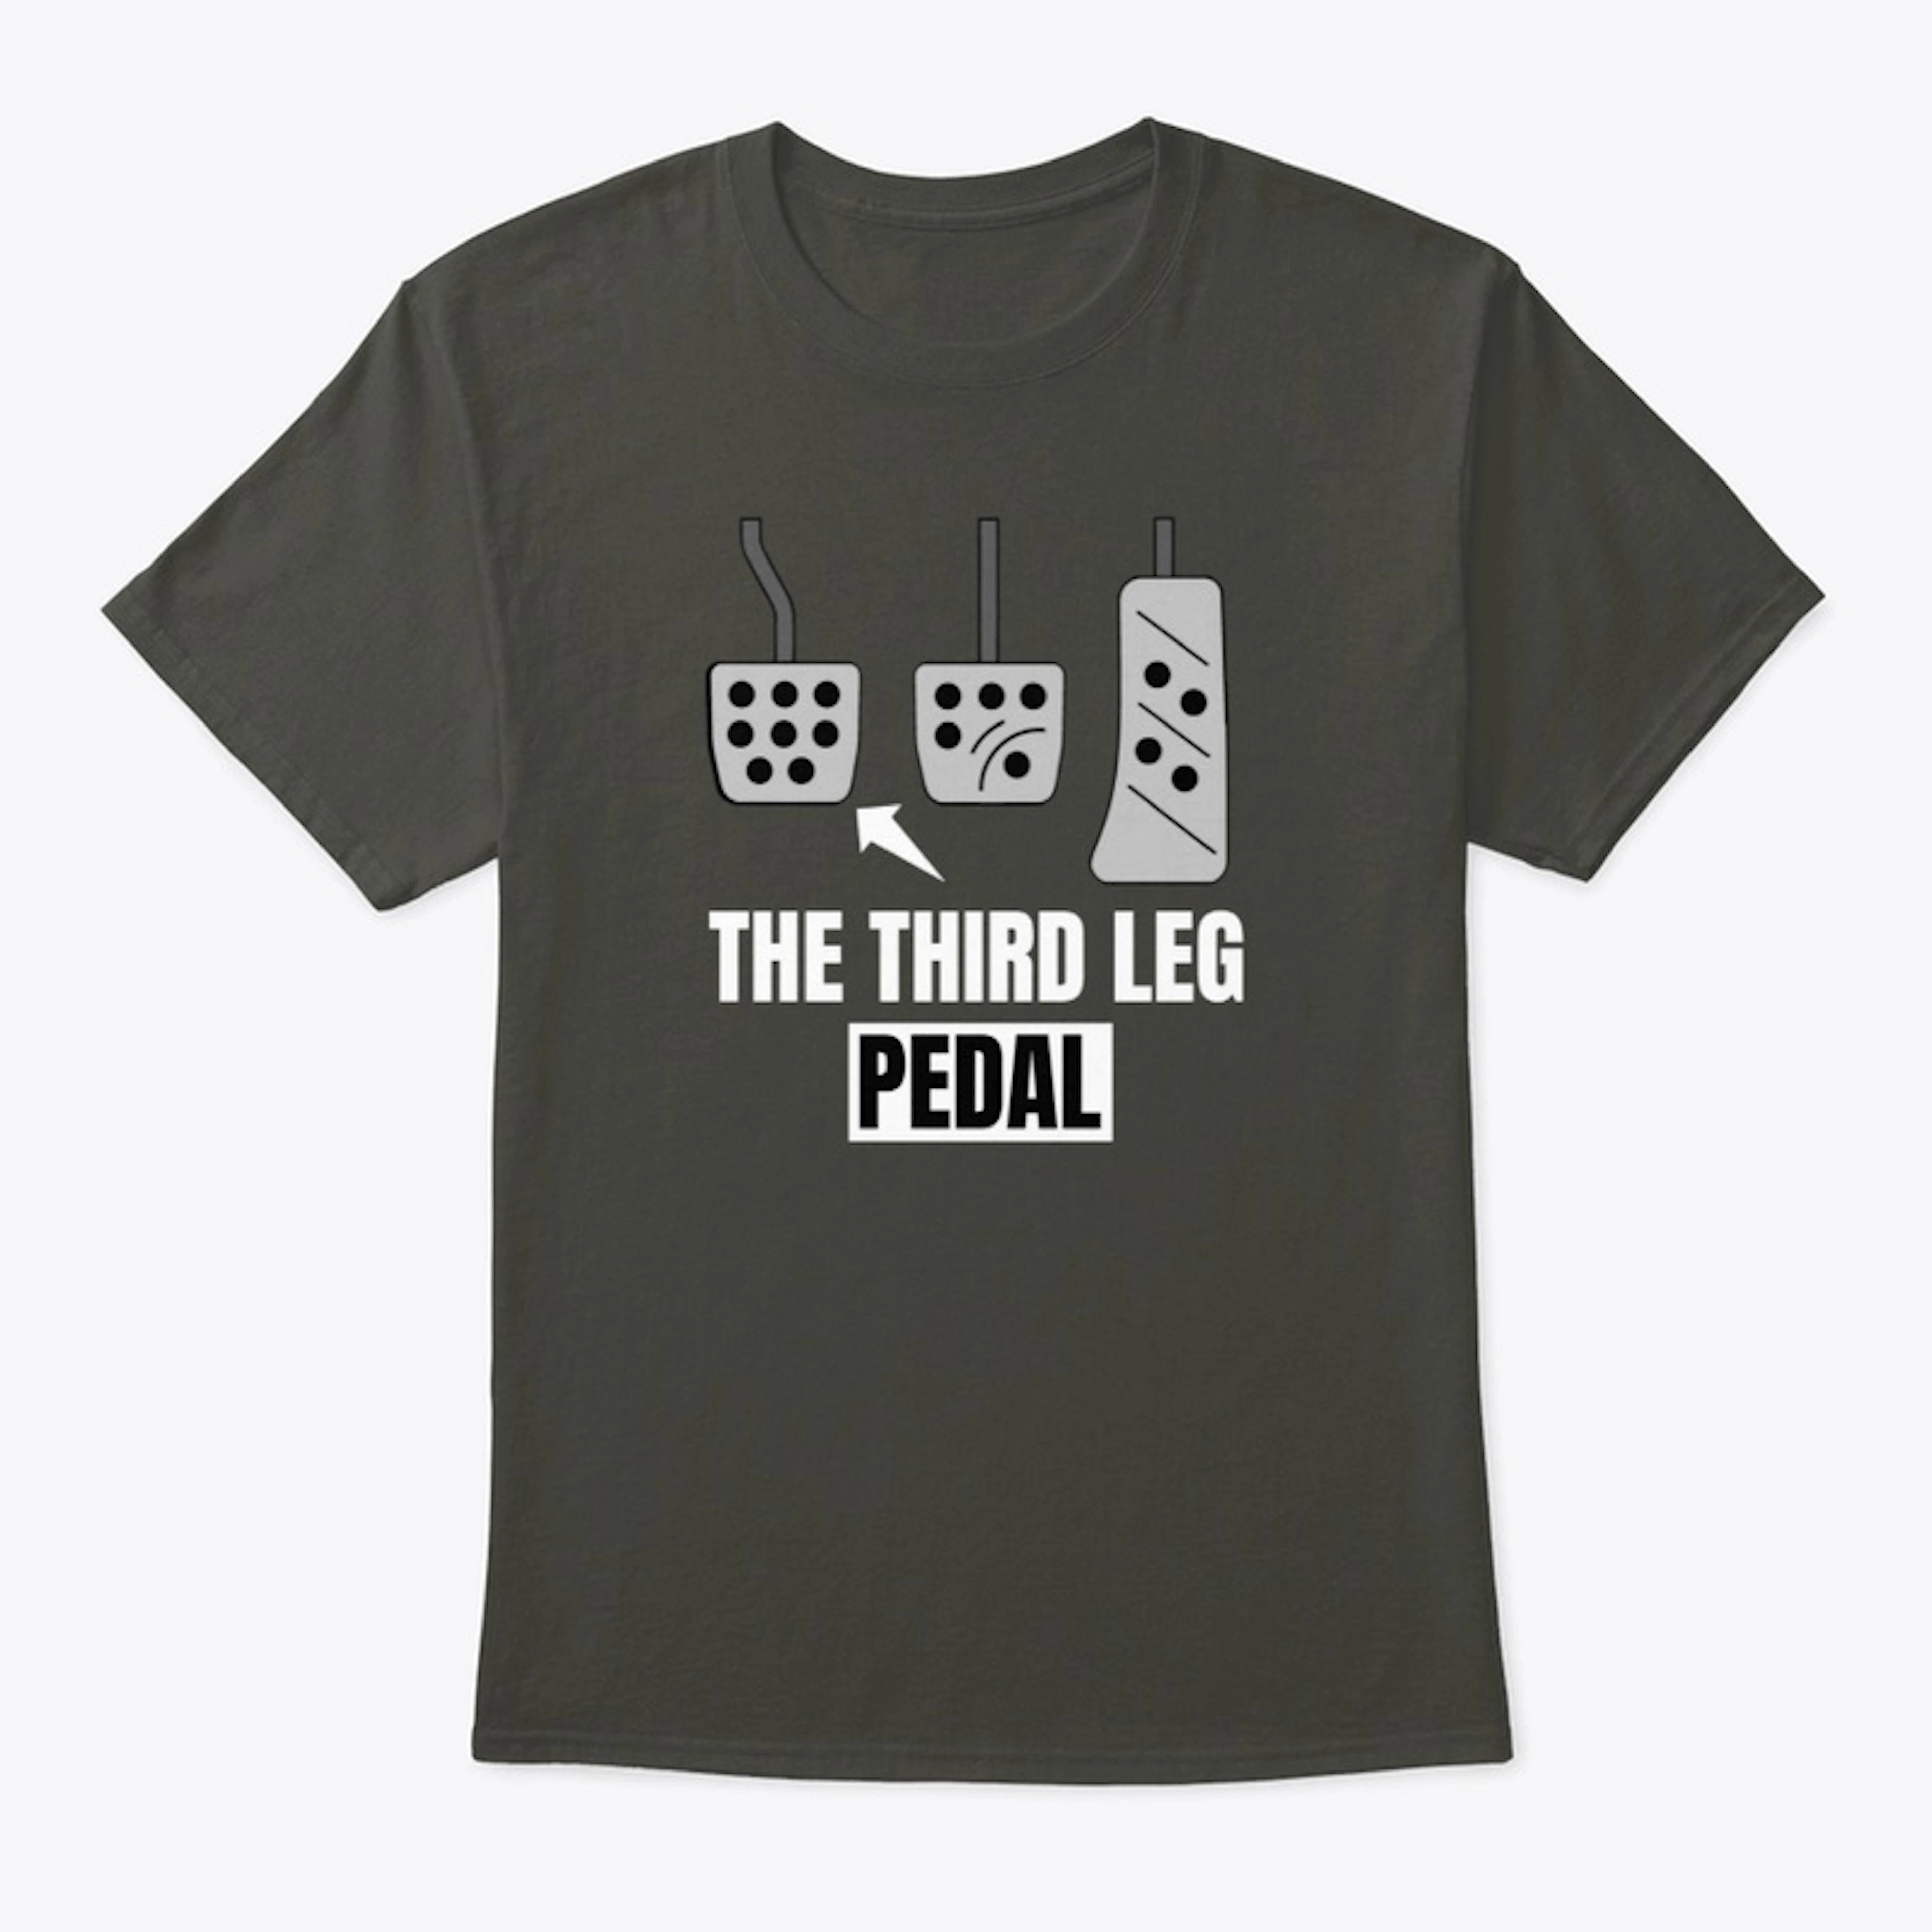 THE THIRD LEG PEDAL - car design